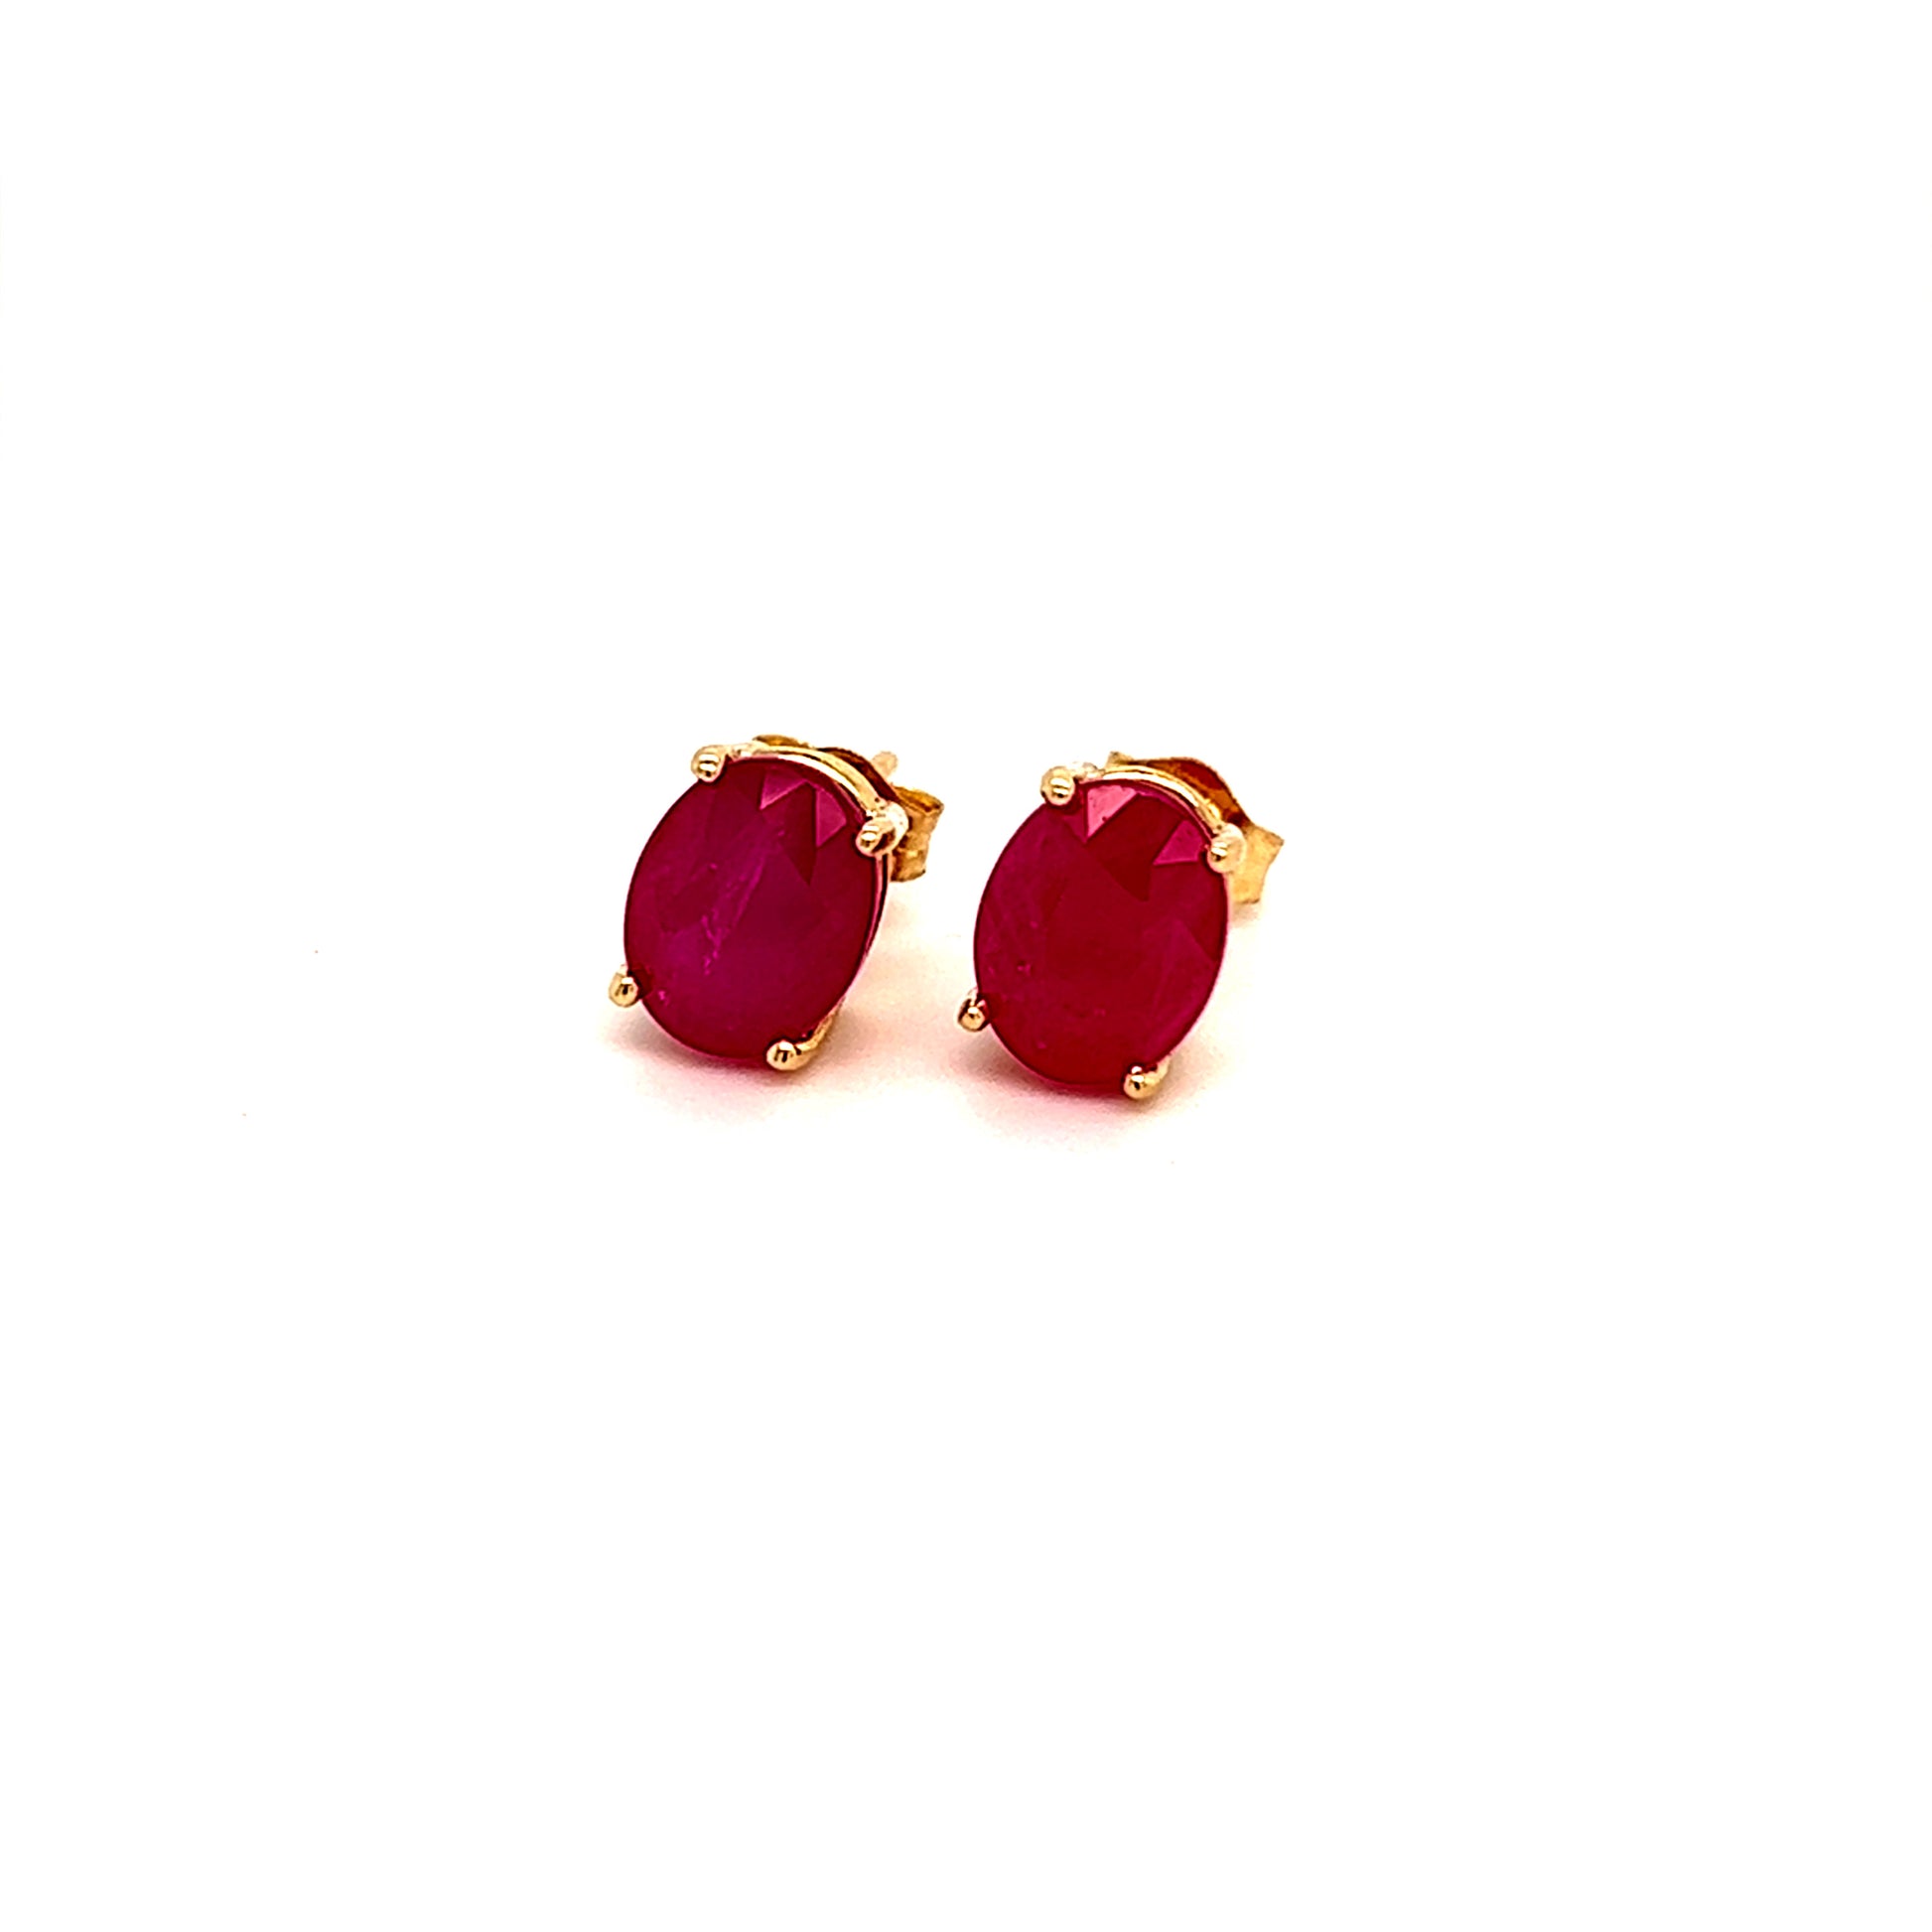 Oval Shape Ruby Stud Earrings 14k Y Gold 4.03 TCW Certified $3,590 211163 - Certified Fine Jewelry